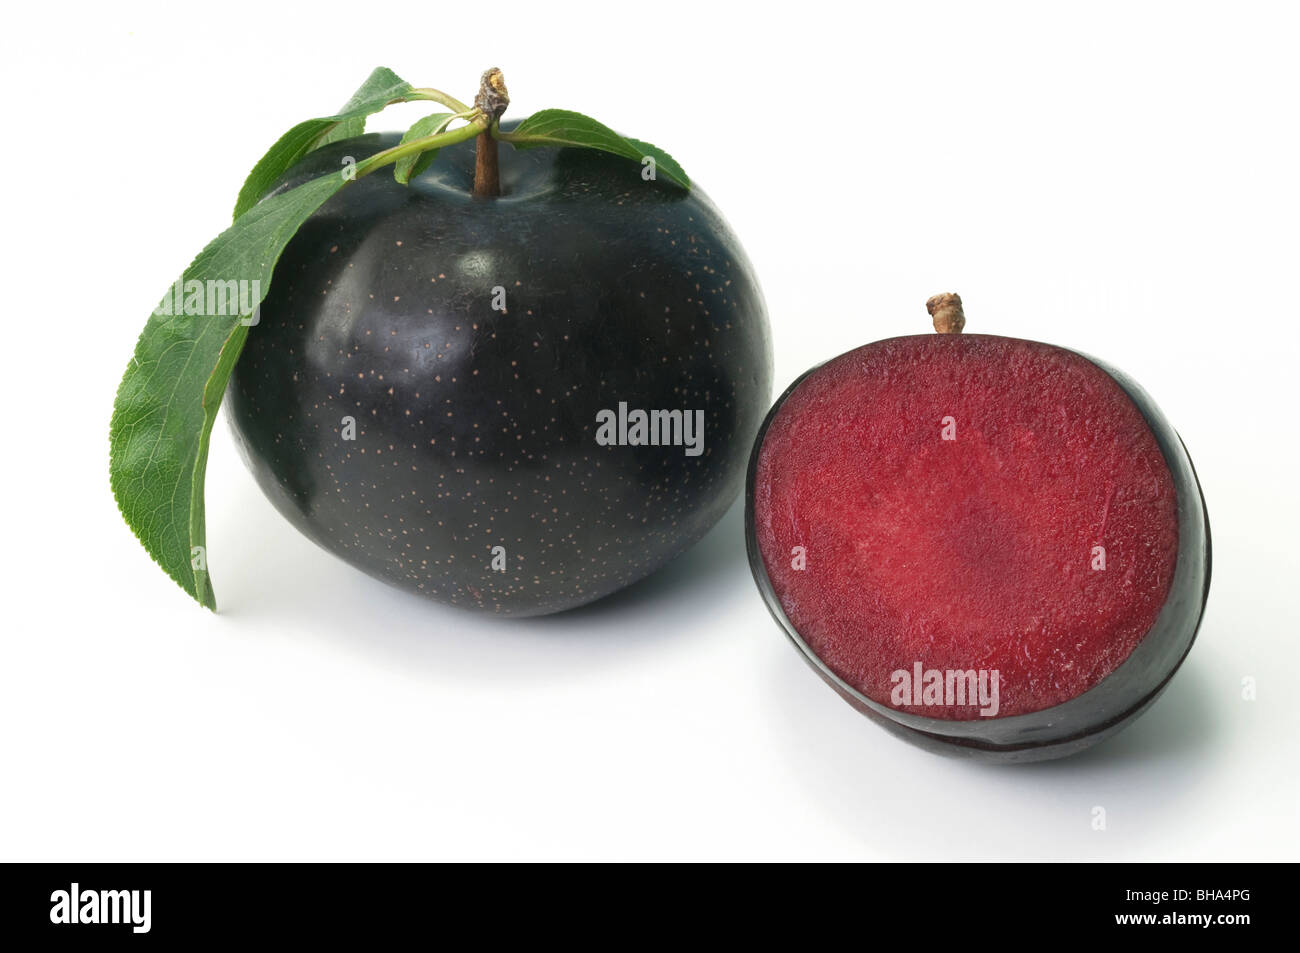 Chinesische Pflaume, Japanische Pflaume (Prunus Salicina), Sorte: Angeleno, ganze und halbierte Früchte, Studio Bild. Stockfoto